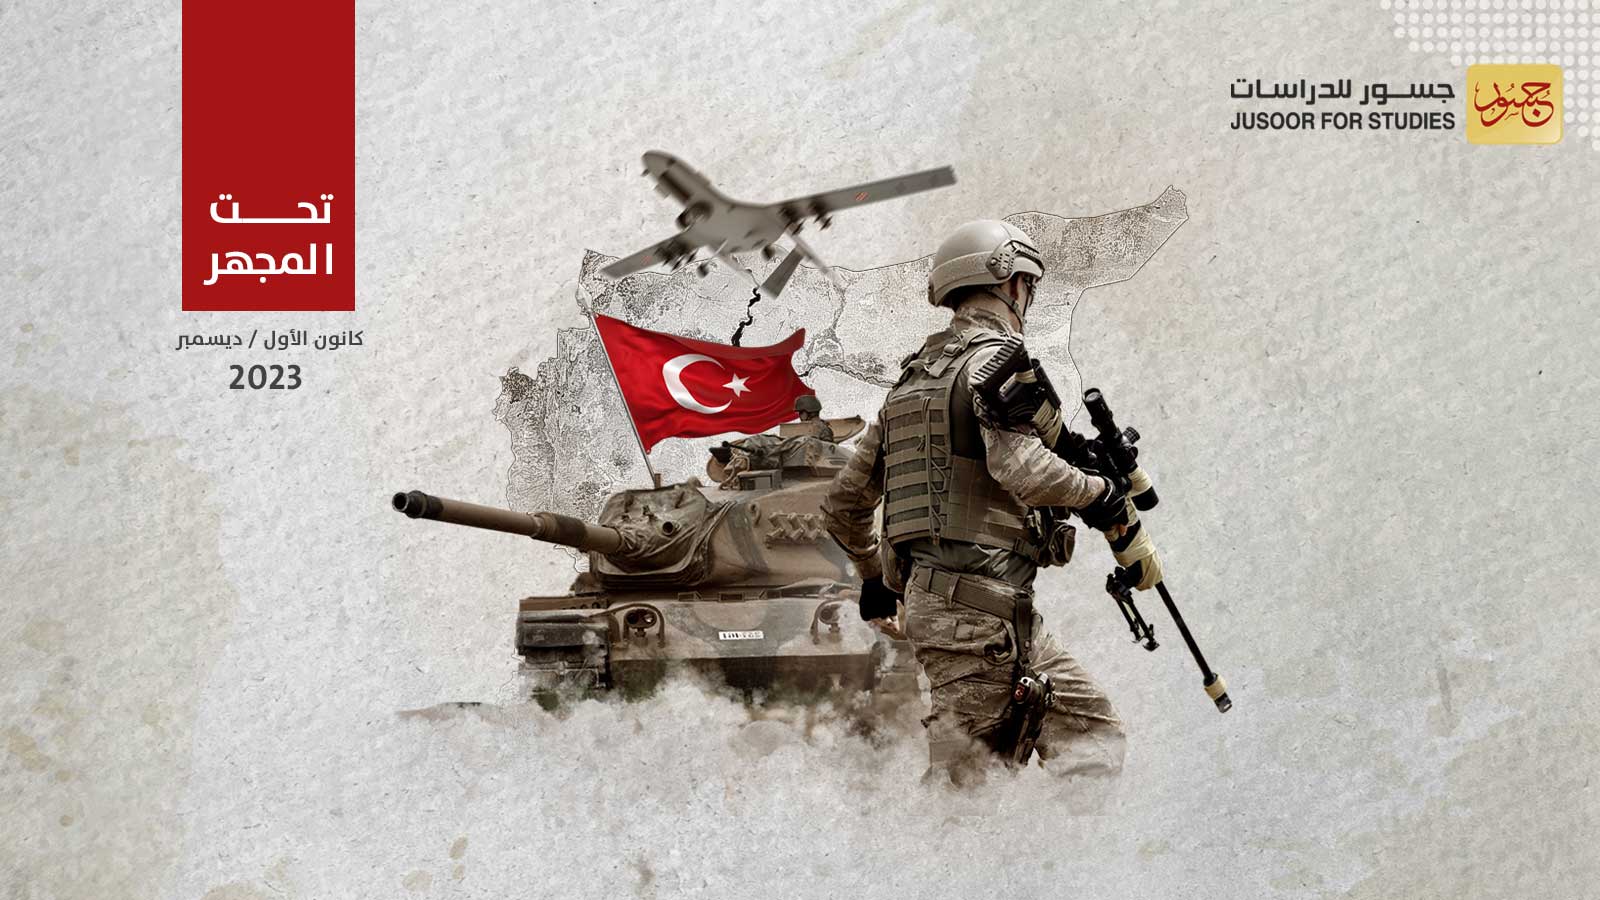 دوافع التصعيد العسكري التركي الجديد شرق سورية